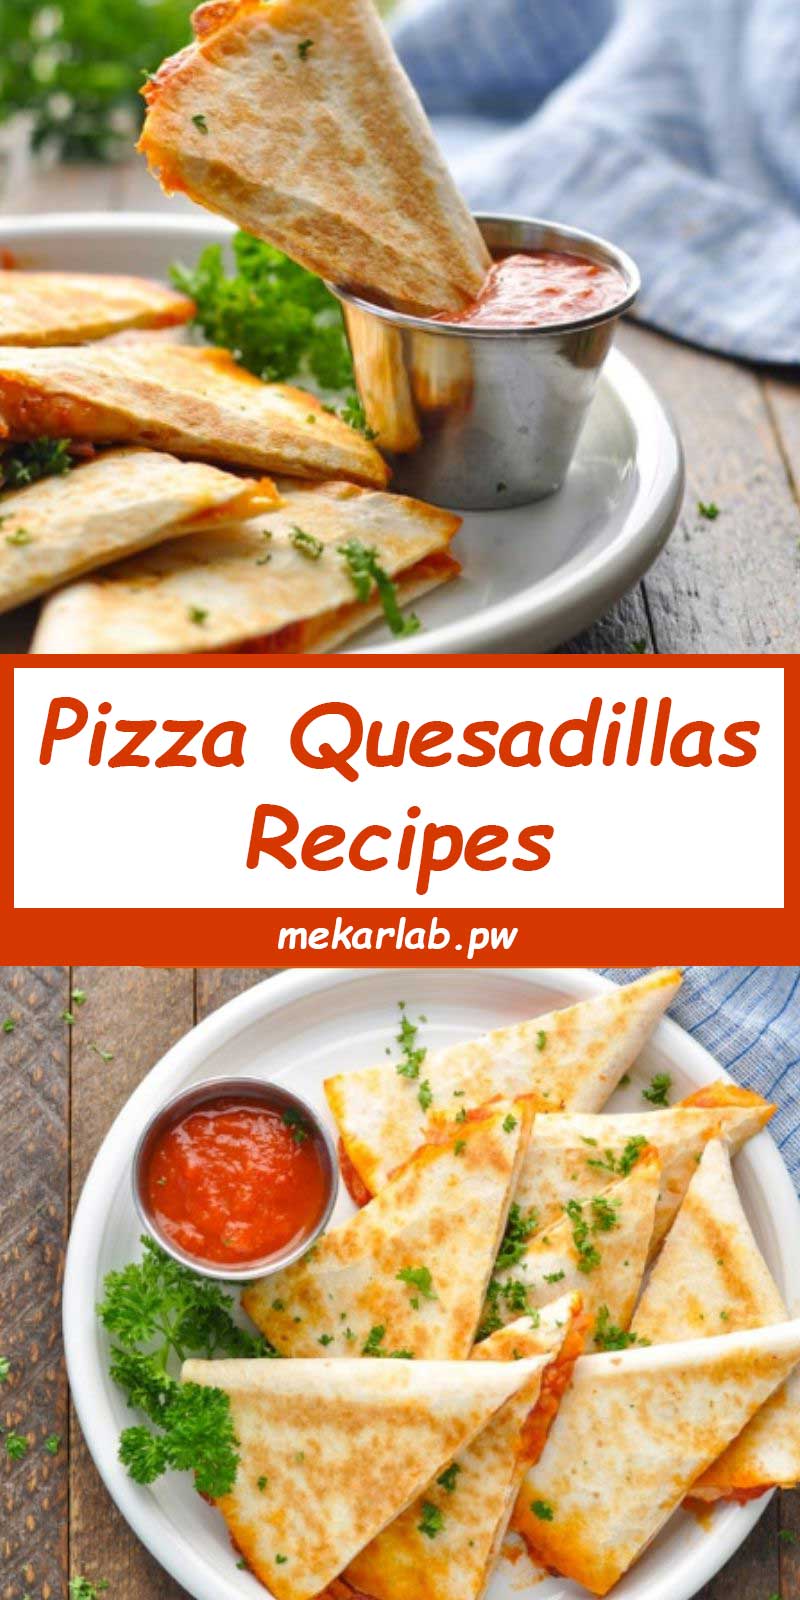 Pizza Quesadillas Recipes